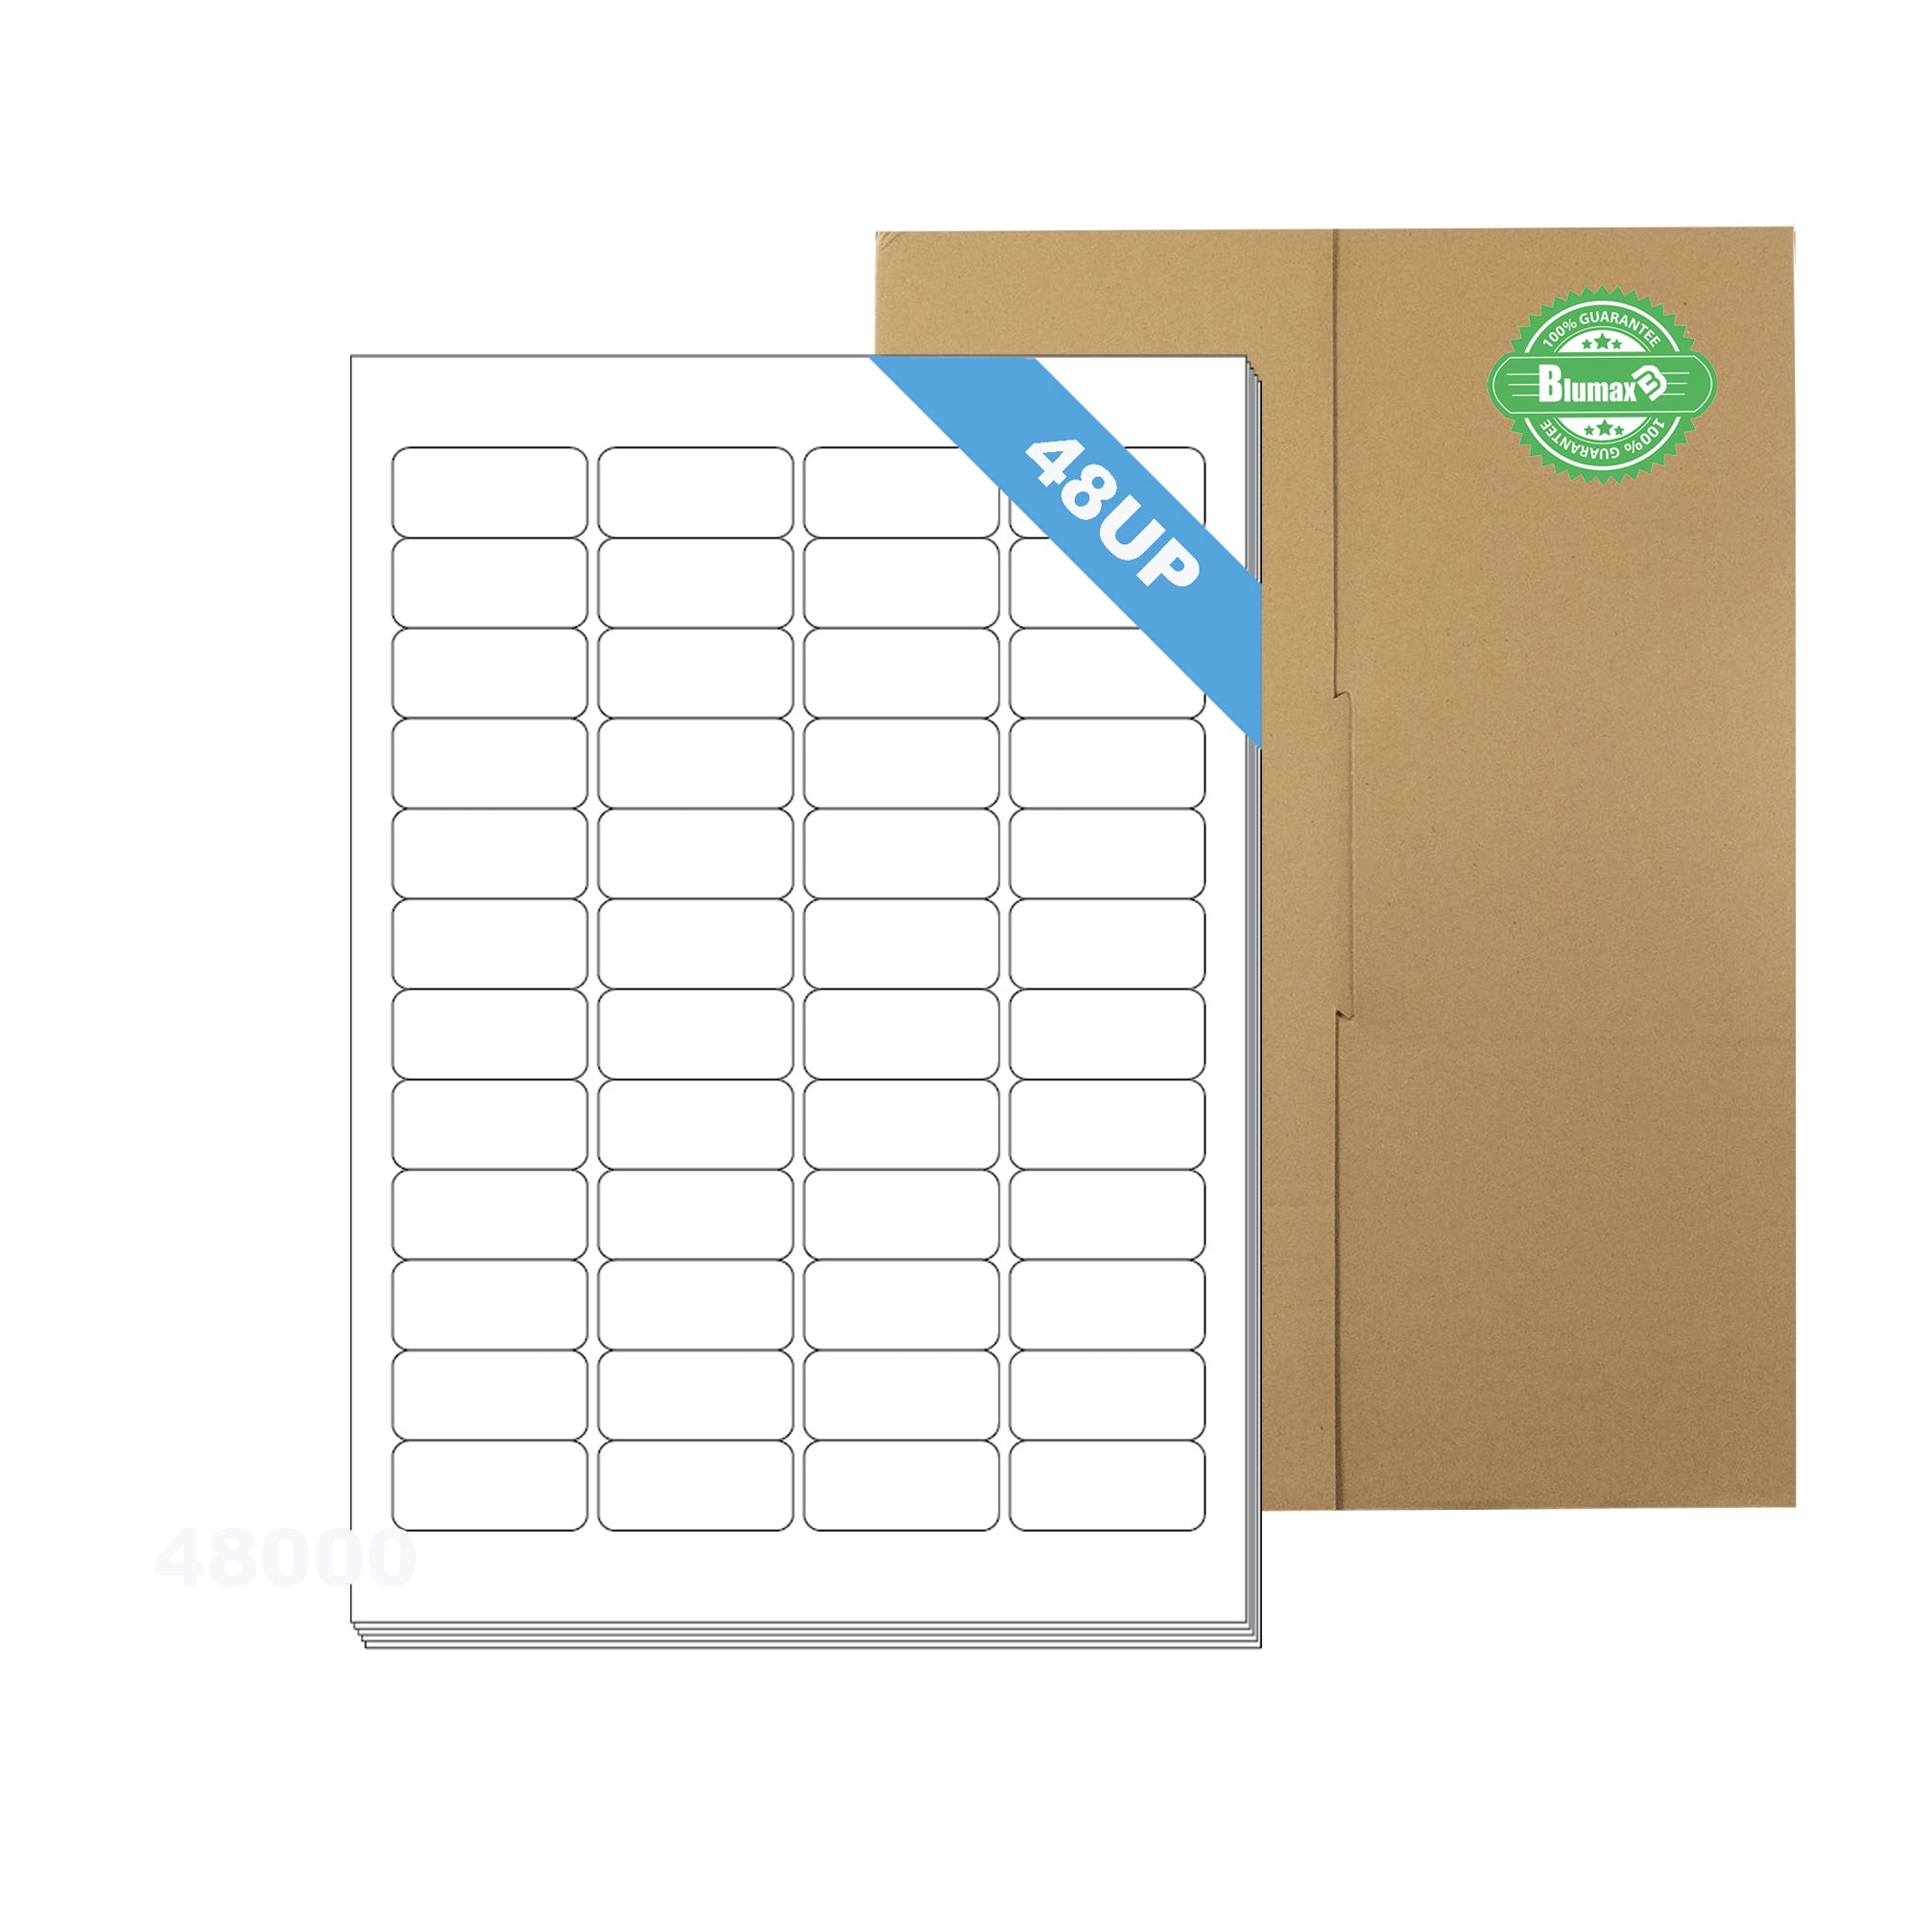 A4 Format Rectangle Labels 45.7 x 21.2mm 48 Labels Per Sheet/ 1000 Sheets